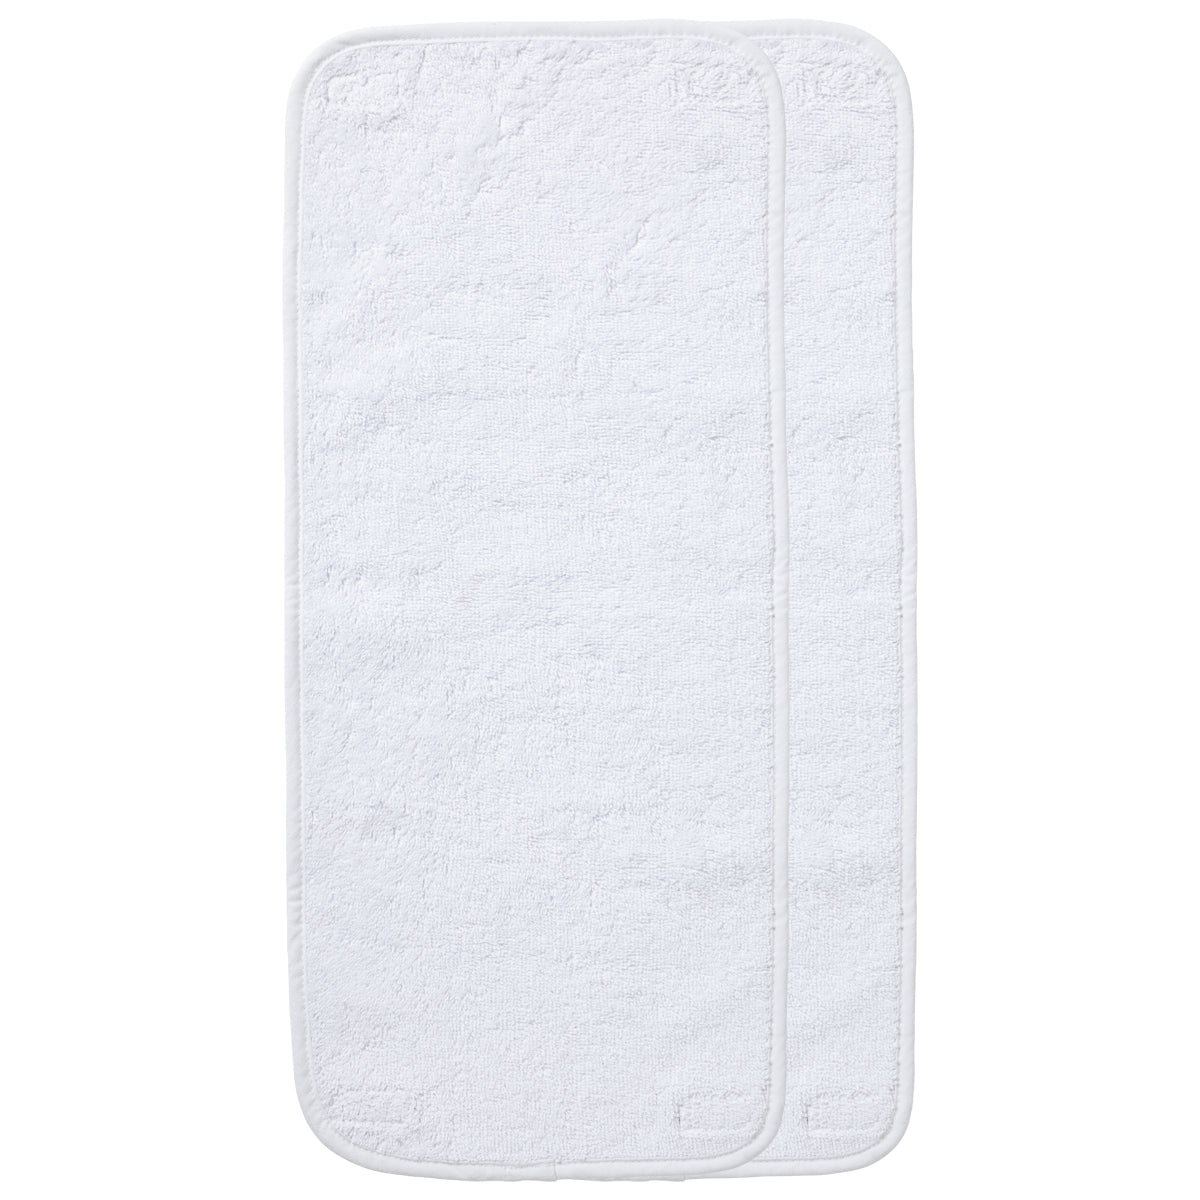 2 serviettes pour matelas à langer bébé blanc en coton 28x60 cm